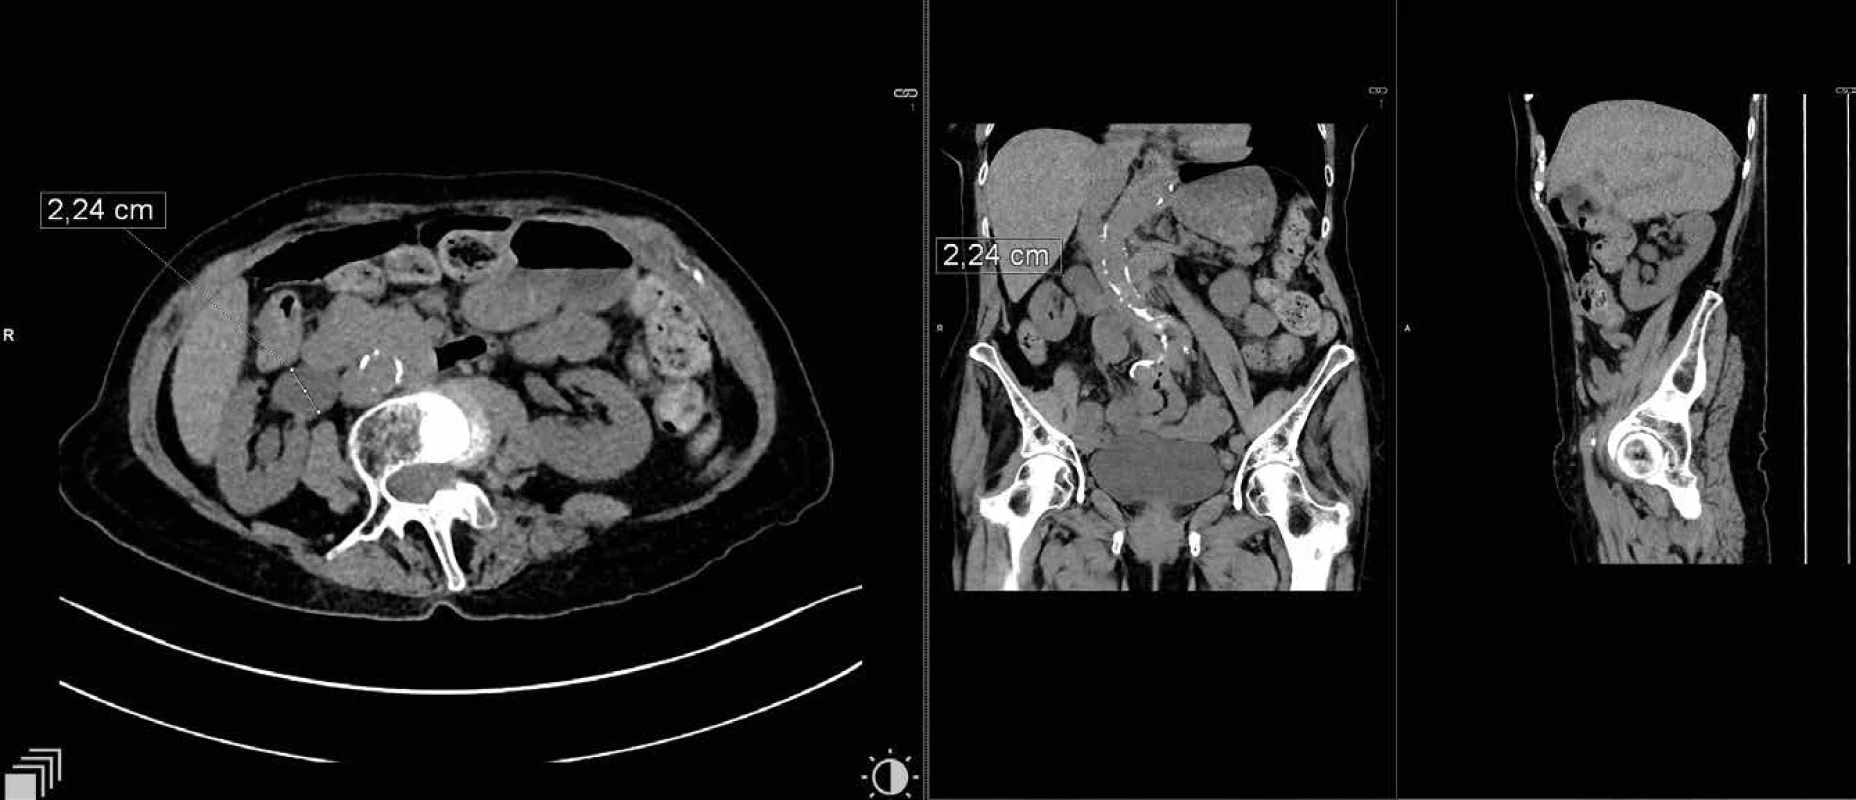 Dilatace ledvinné pánvičky pravé ledviny   Fig 2: Dilation of renal pelvis of the right kidney